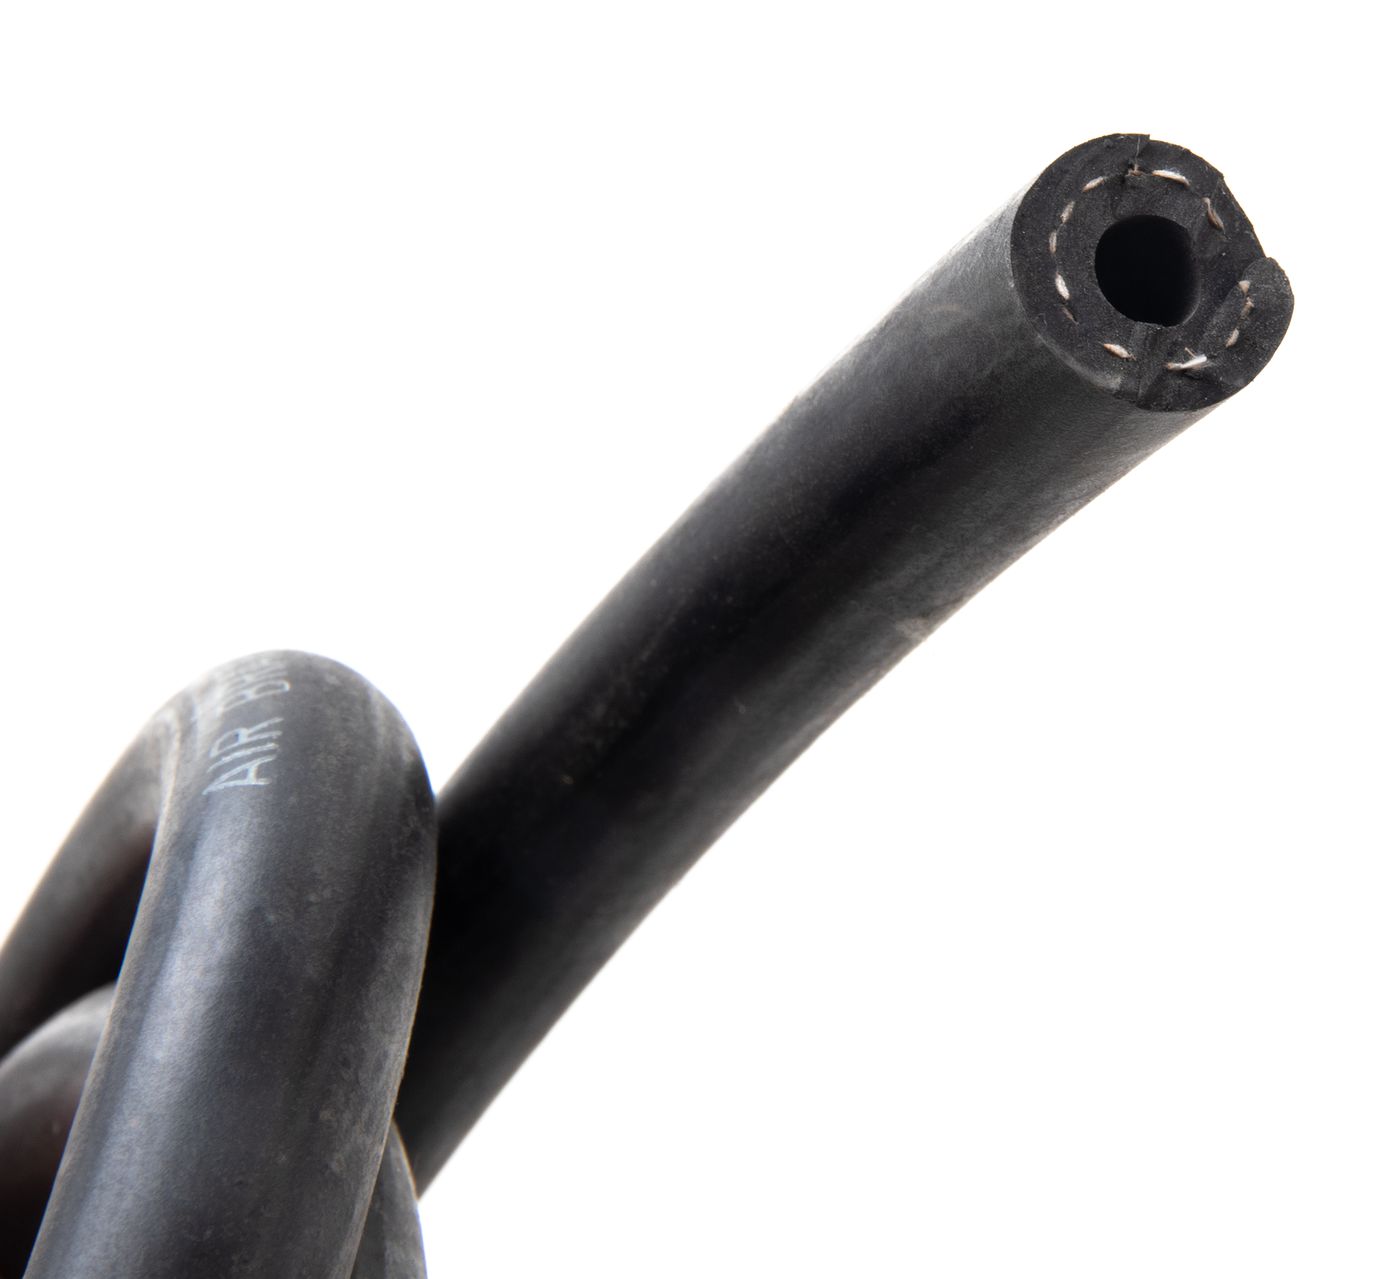 Unterdruckschlauch
Vacuum hose
Flexible de dépression
Tubo de v